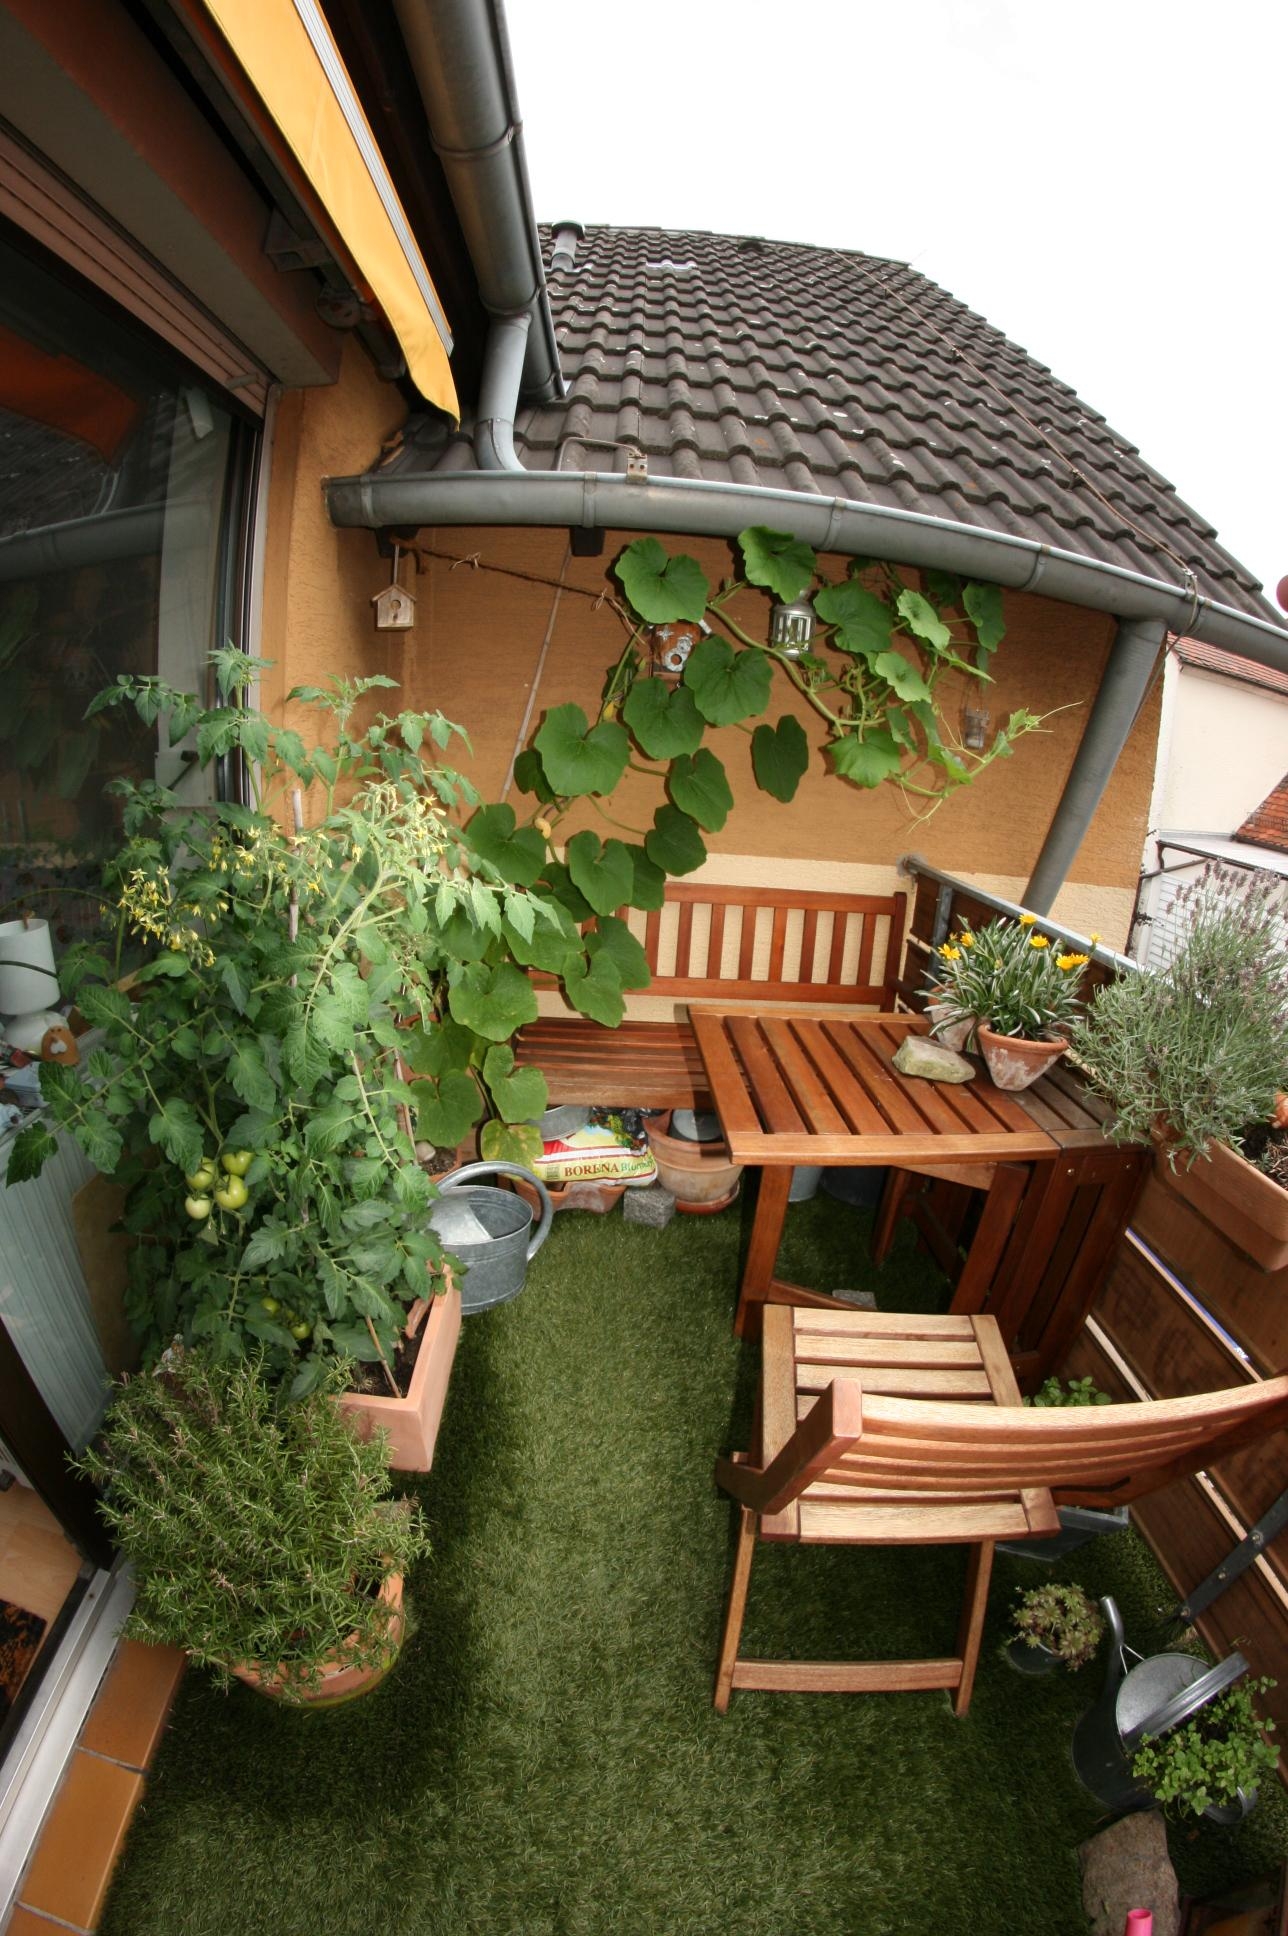 Mein alter Balkon, nun haben wir endlich einen Garten an dem sich meine Freundin noch mehr austoben kann!
#balkondiy